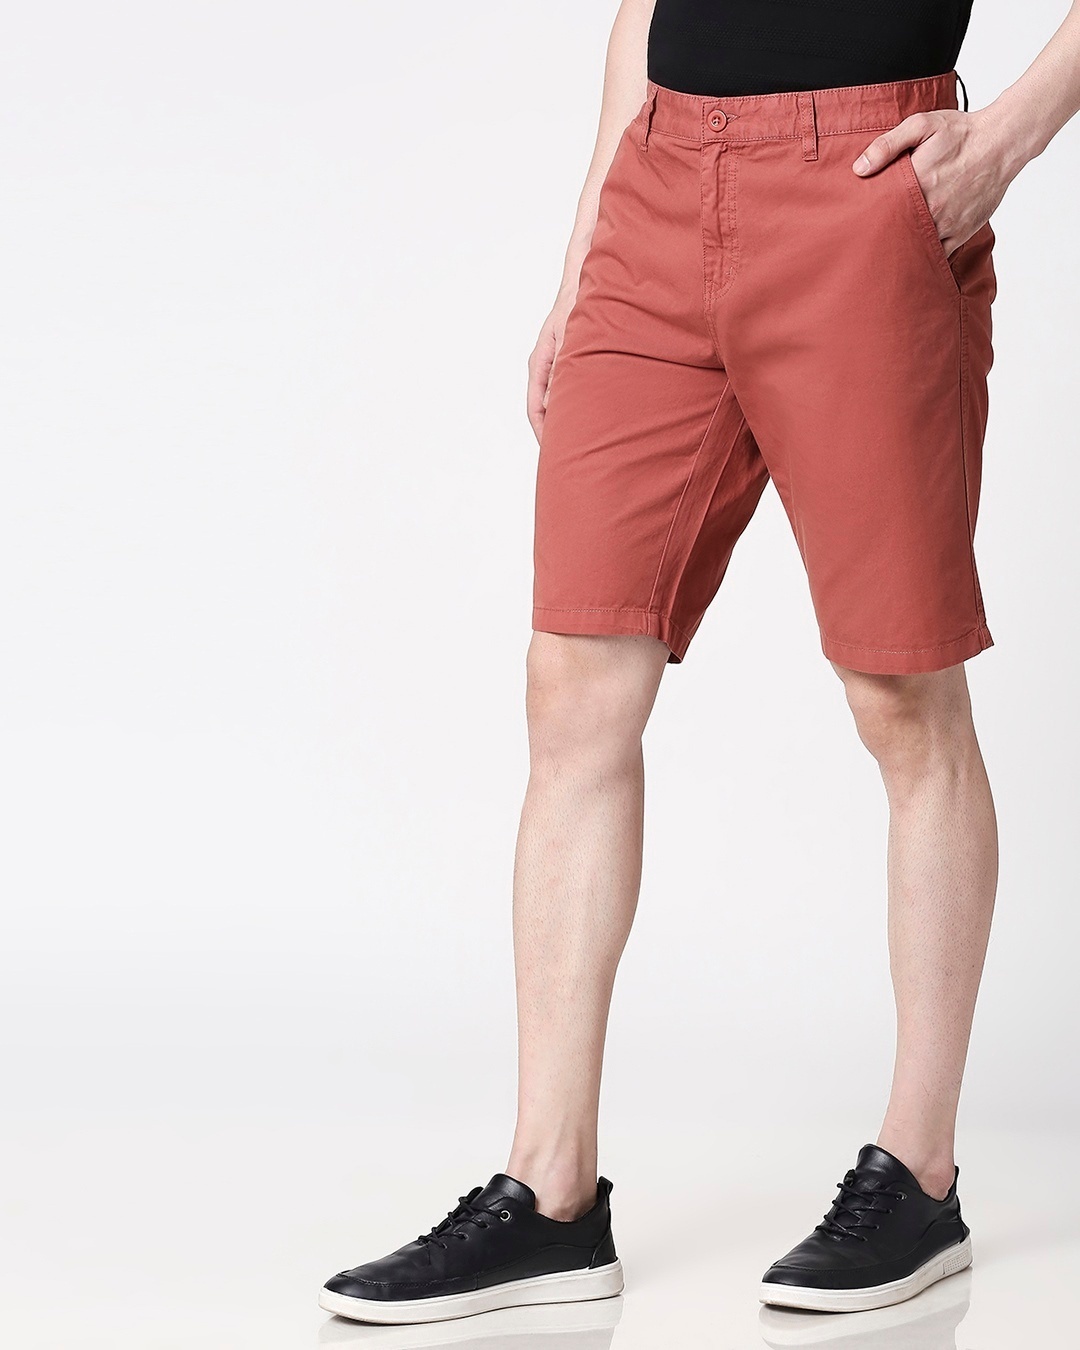 Shop Burnt Brown Men's Shorts-Design